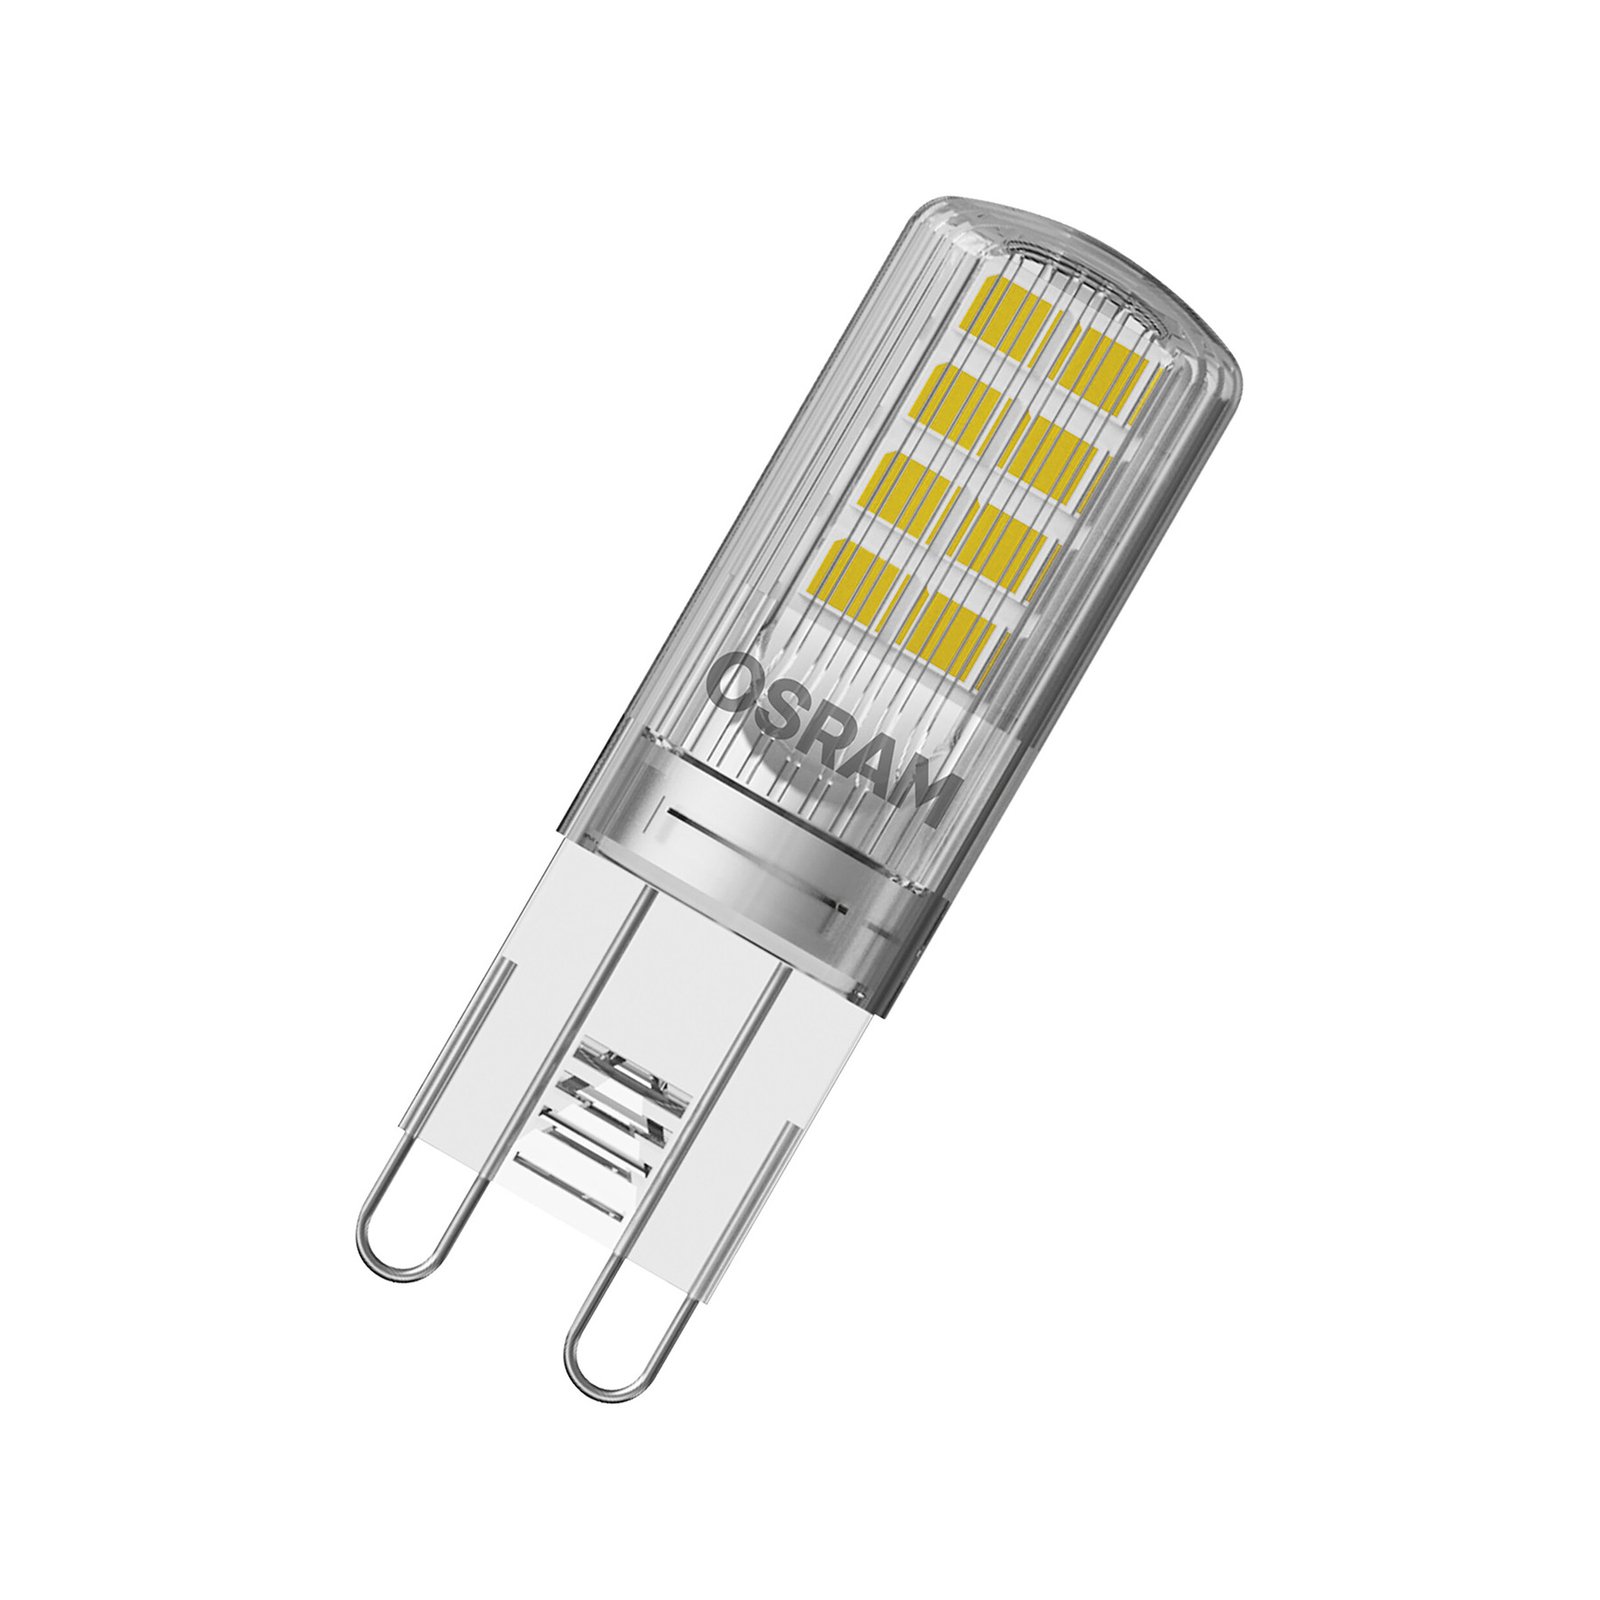 OSRAM Base PIN LED kolík žárovka G9 2,6W 320lm 5ks